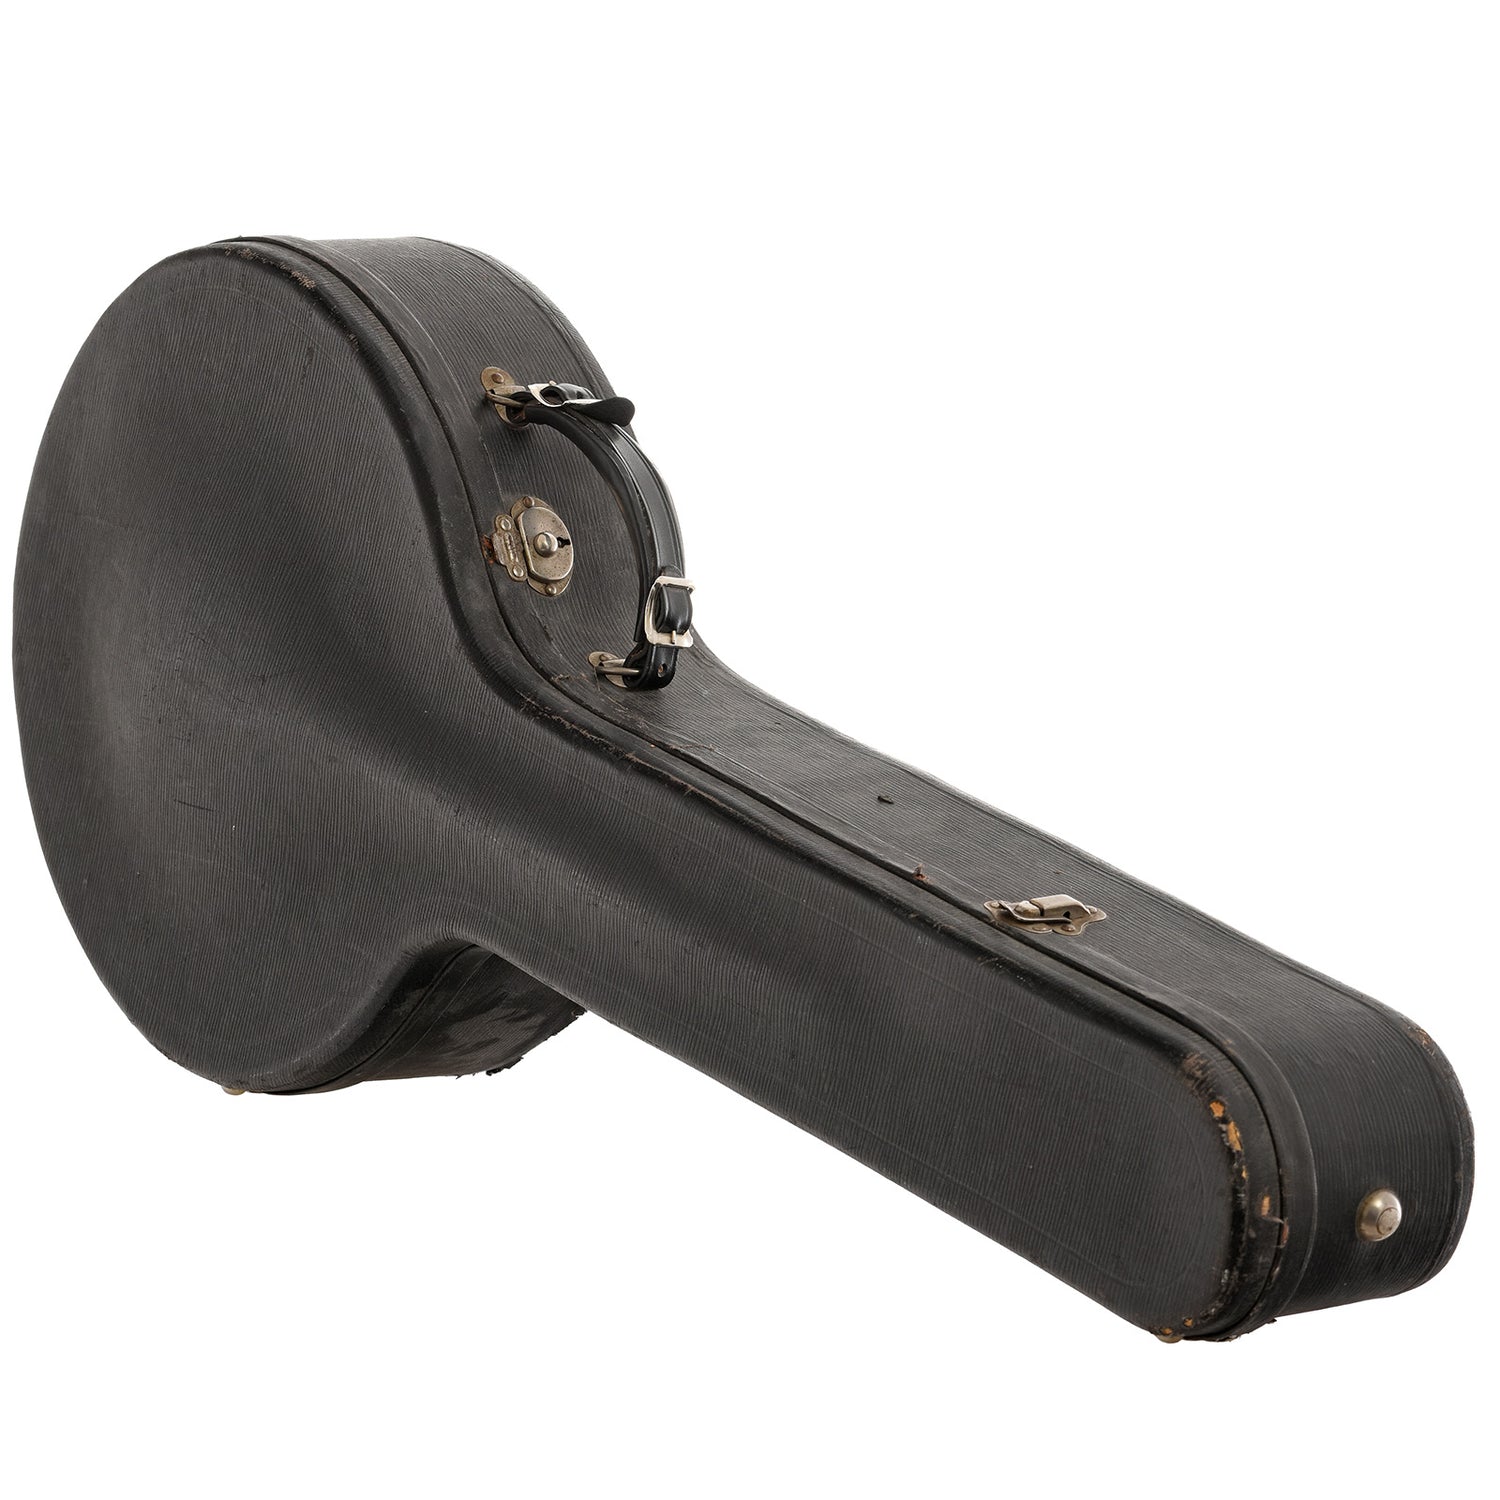 Case for 1929 Gibson TB-3 Tenor Banjo